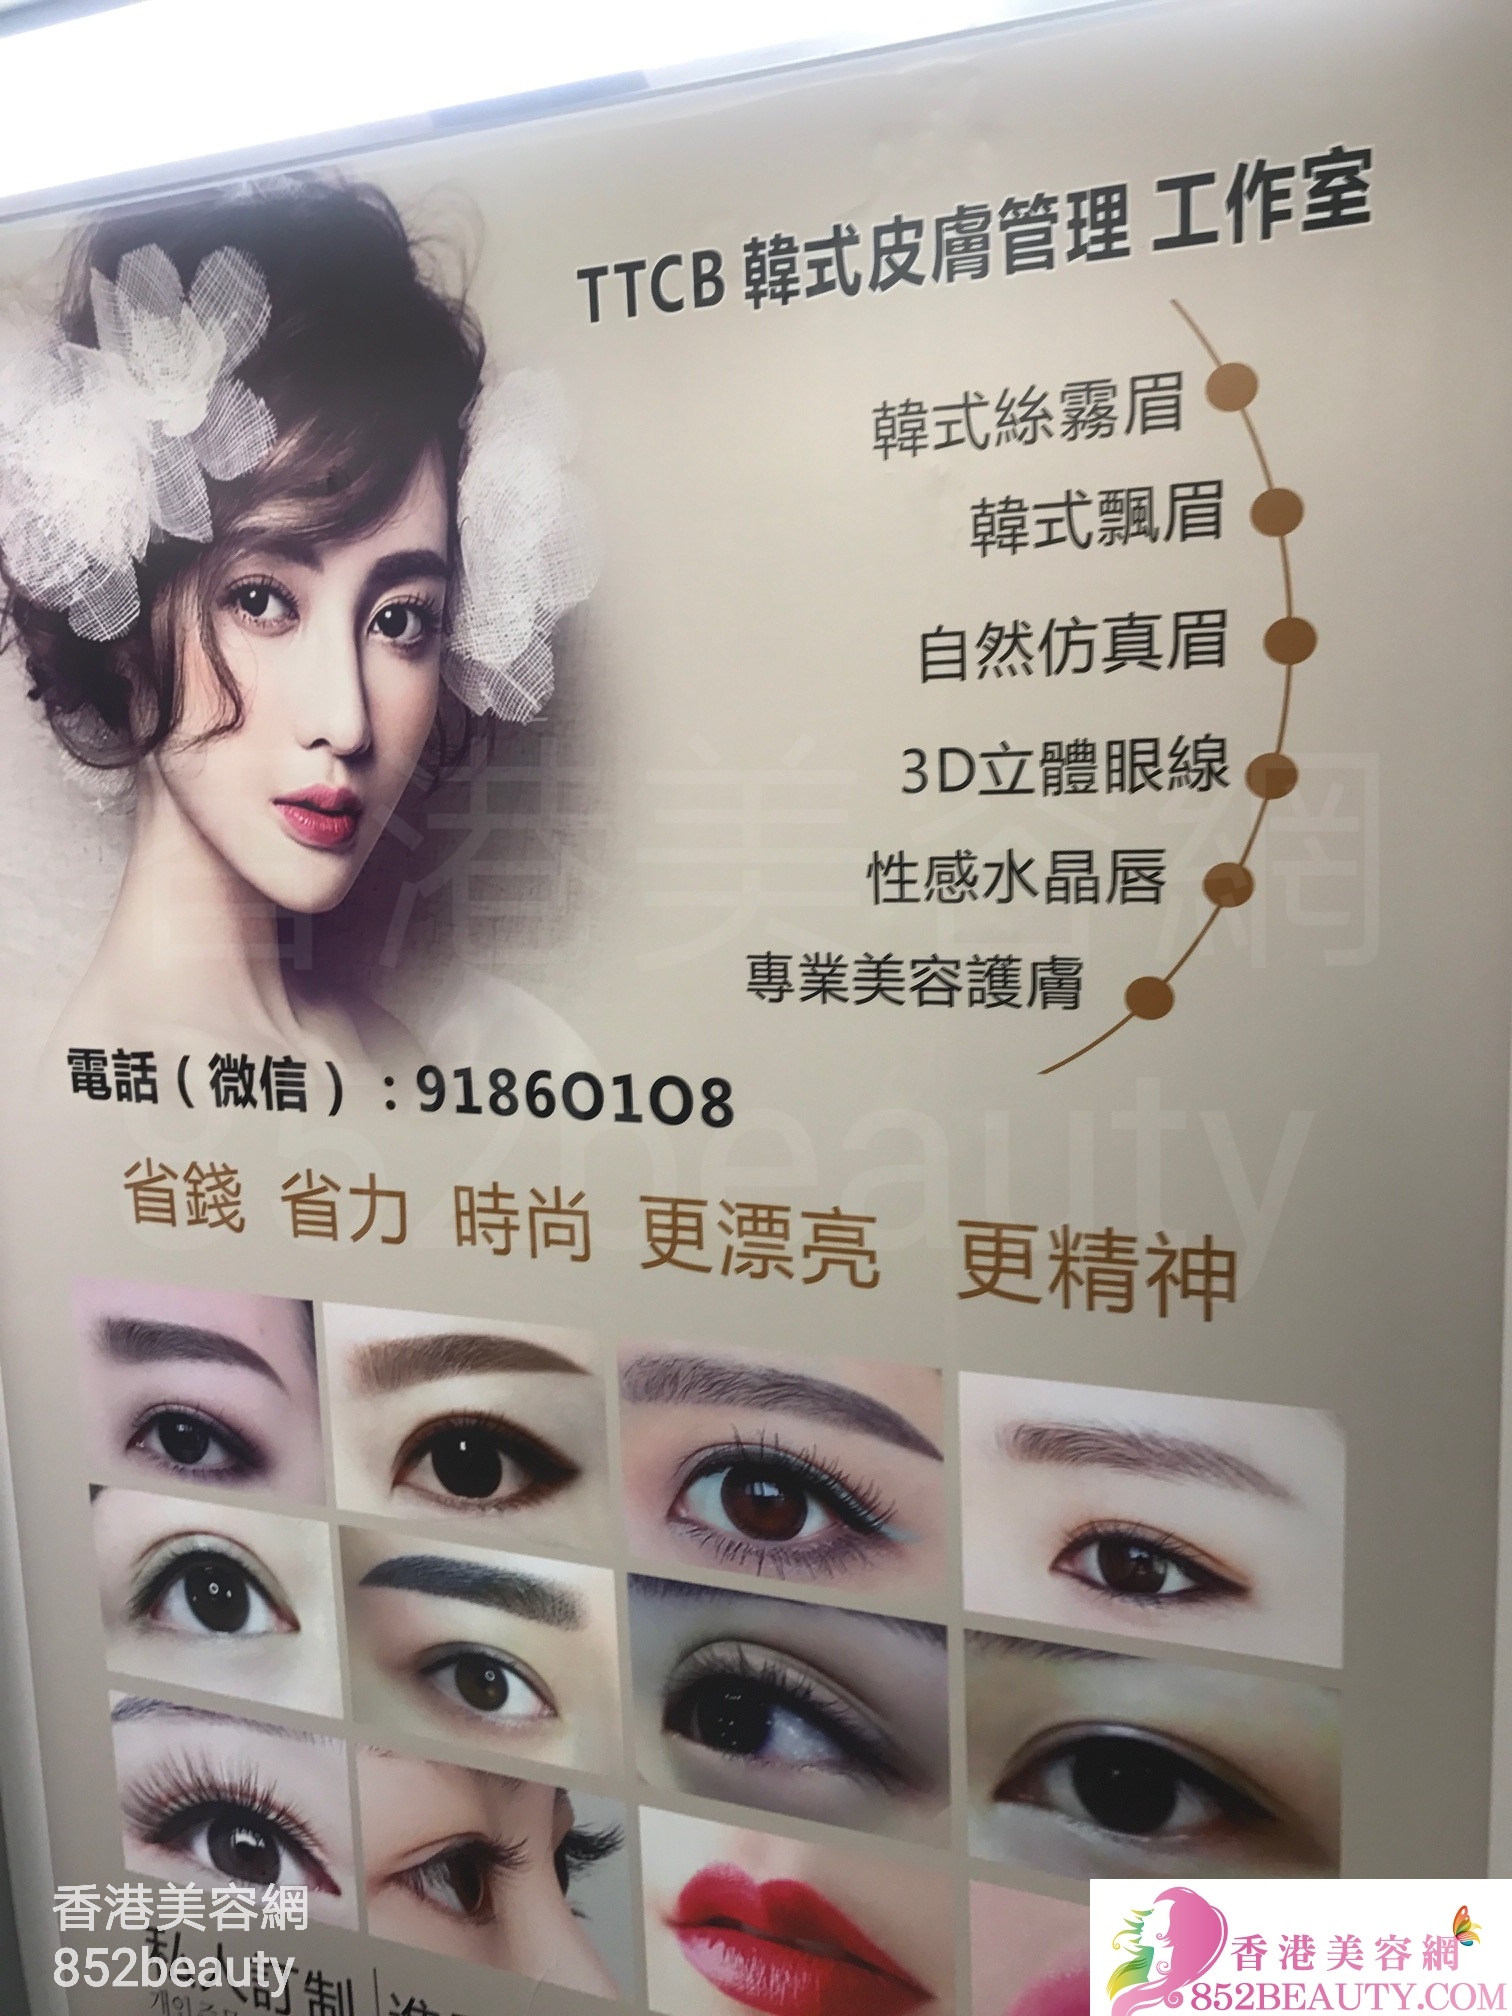 美容院 Beauty Salon: TTCB 韓式皮膚管理 工作室